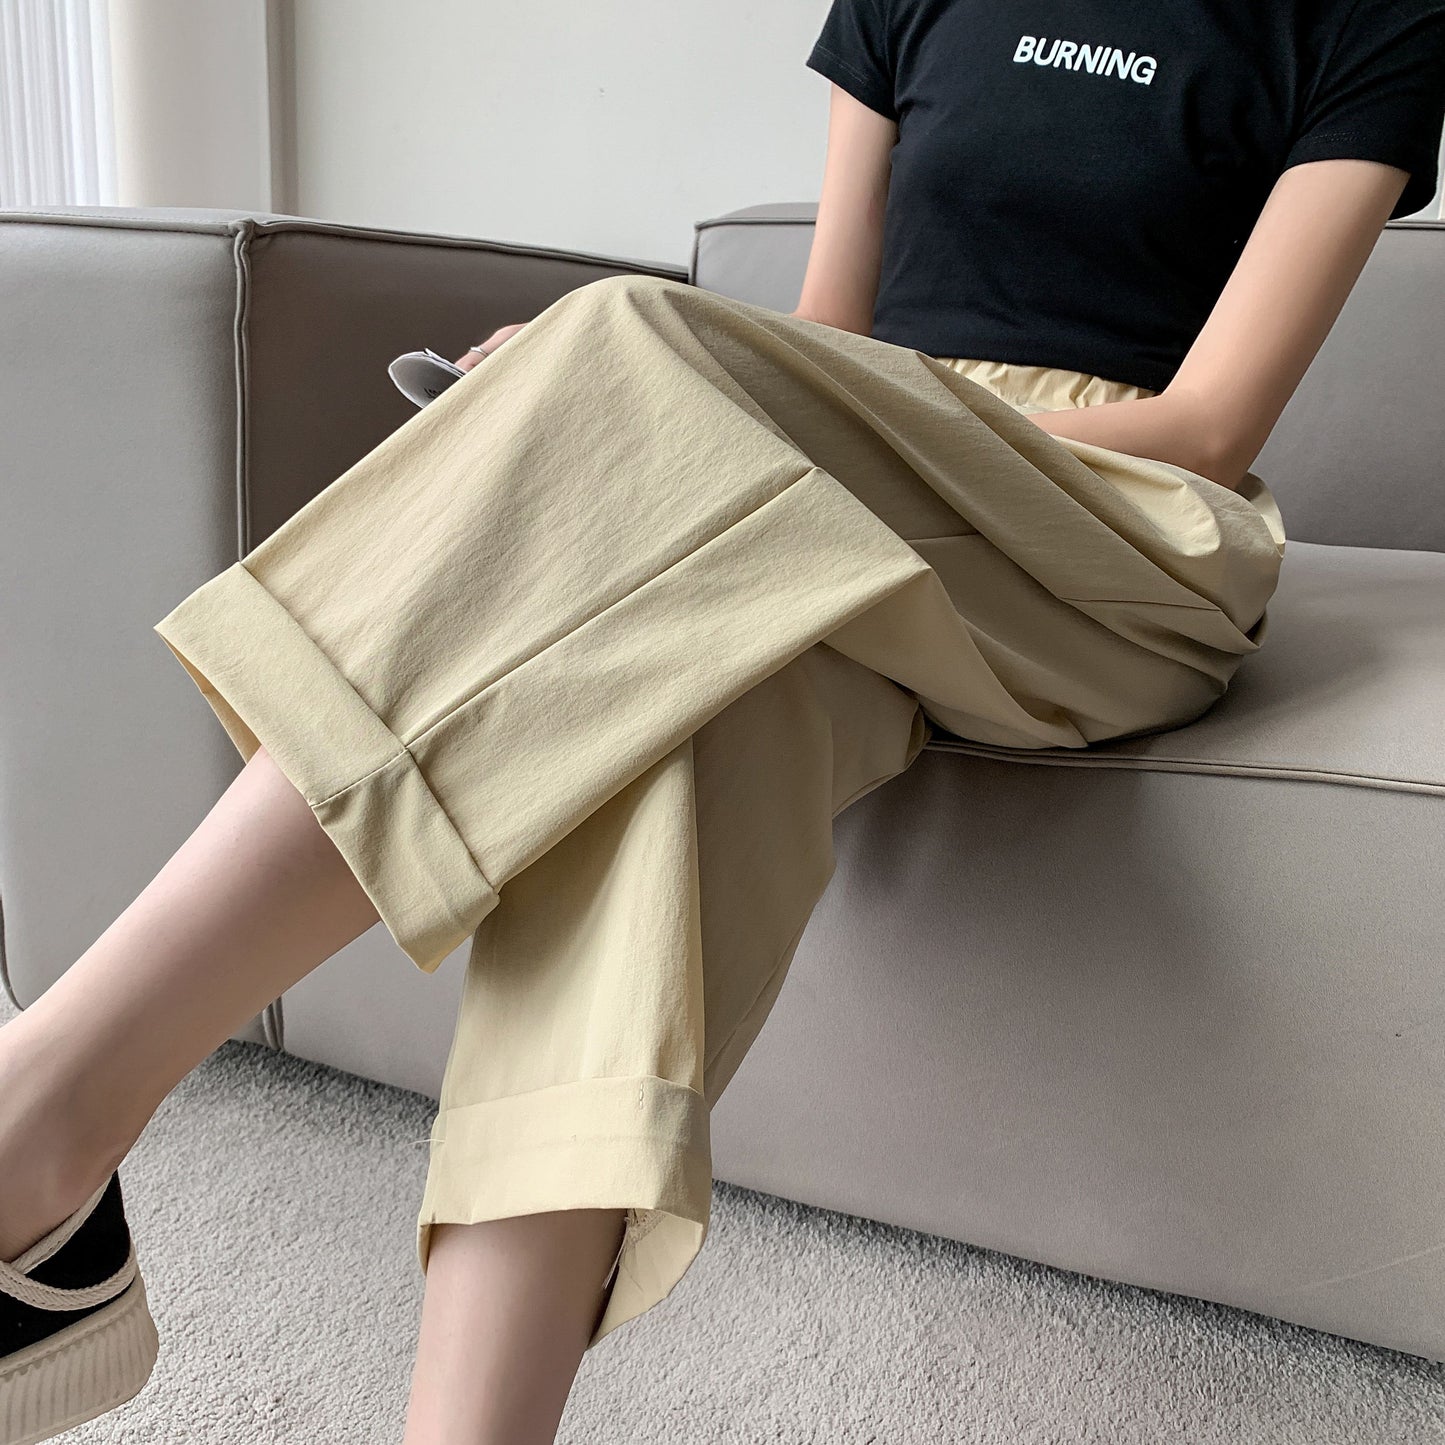 Pantalon coupe droite ample avec poches, solide et polyvalent, jusqu'à la cheville.